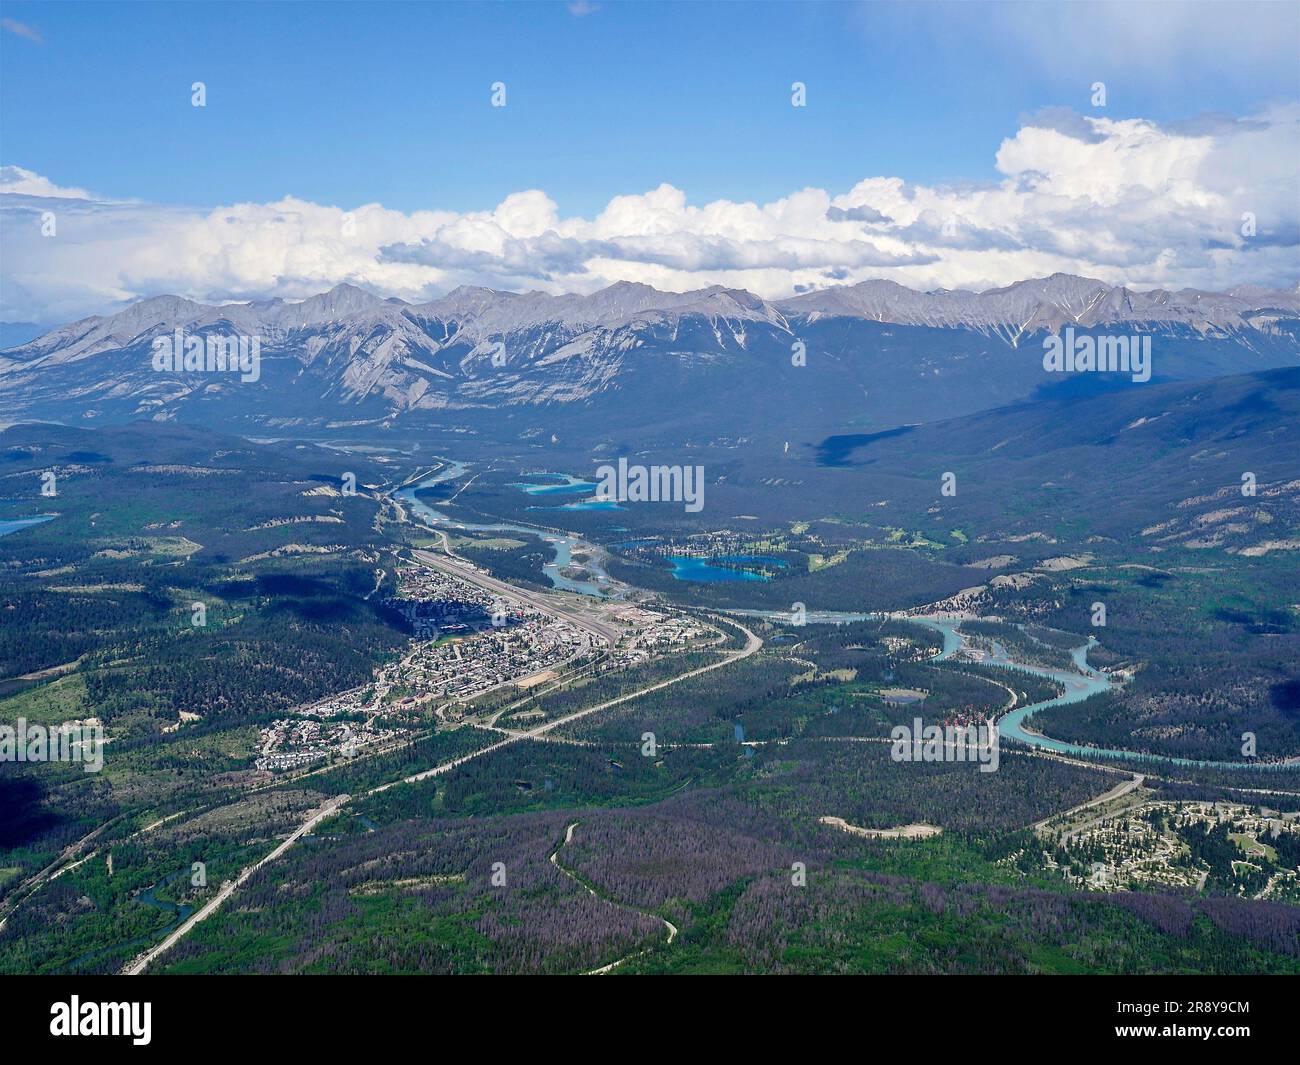 Vista sullo Sky tram di Jasper dalla cima delle Montagne Rocciose con strade, fiumi e laghi tutti visibili. Foto Stock